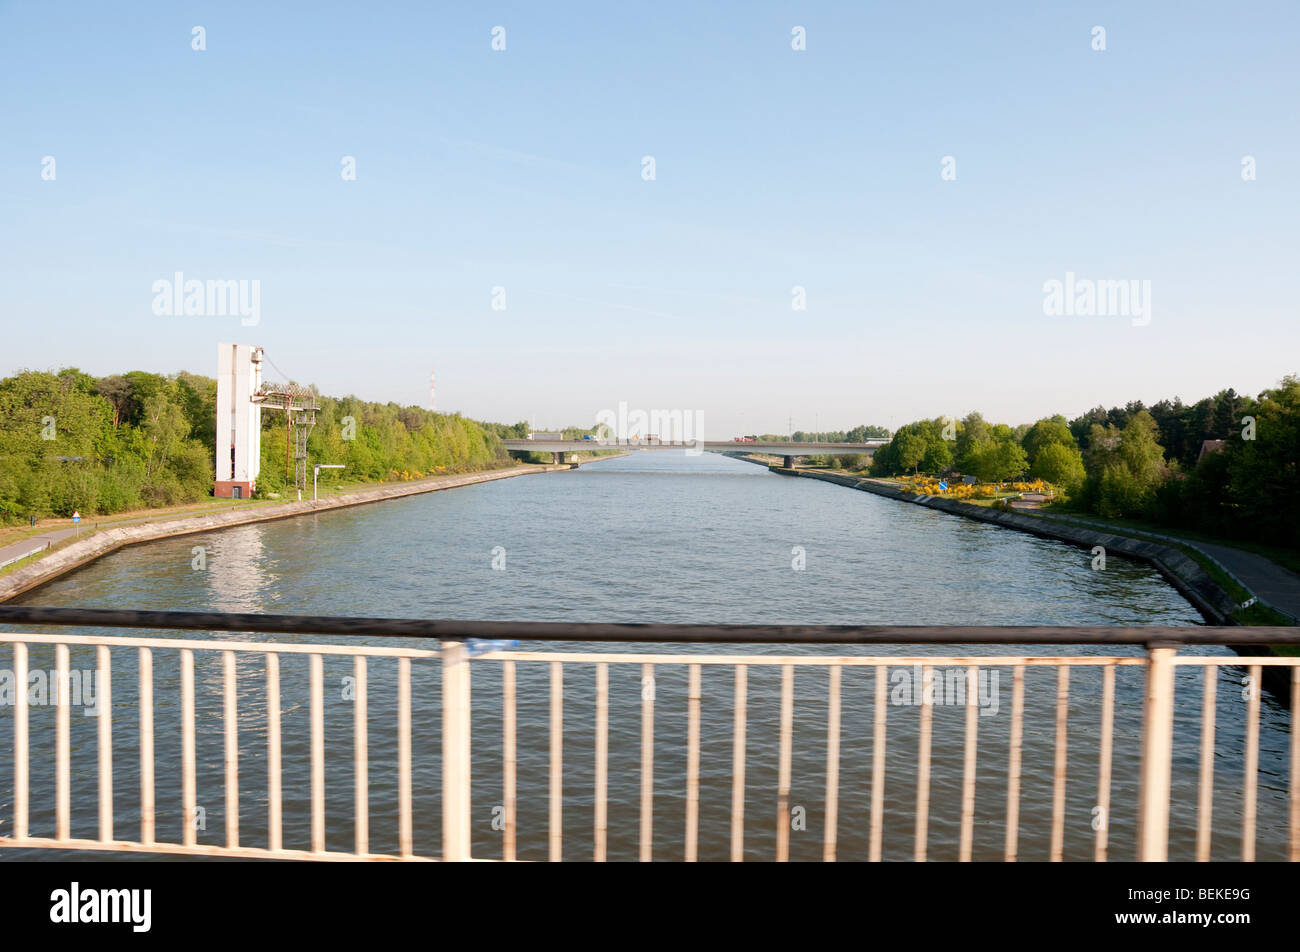 Mehaigne River near Wanze Belgium Europe Stock Photo